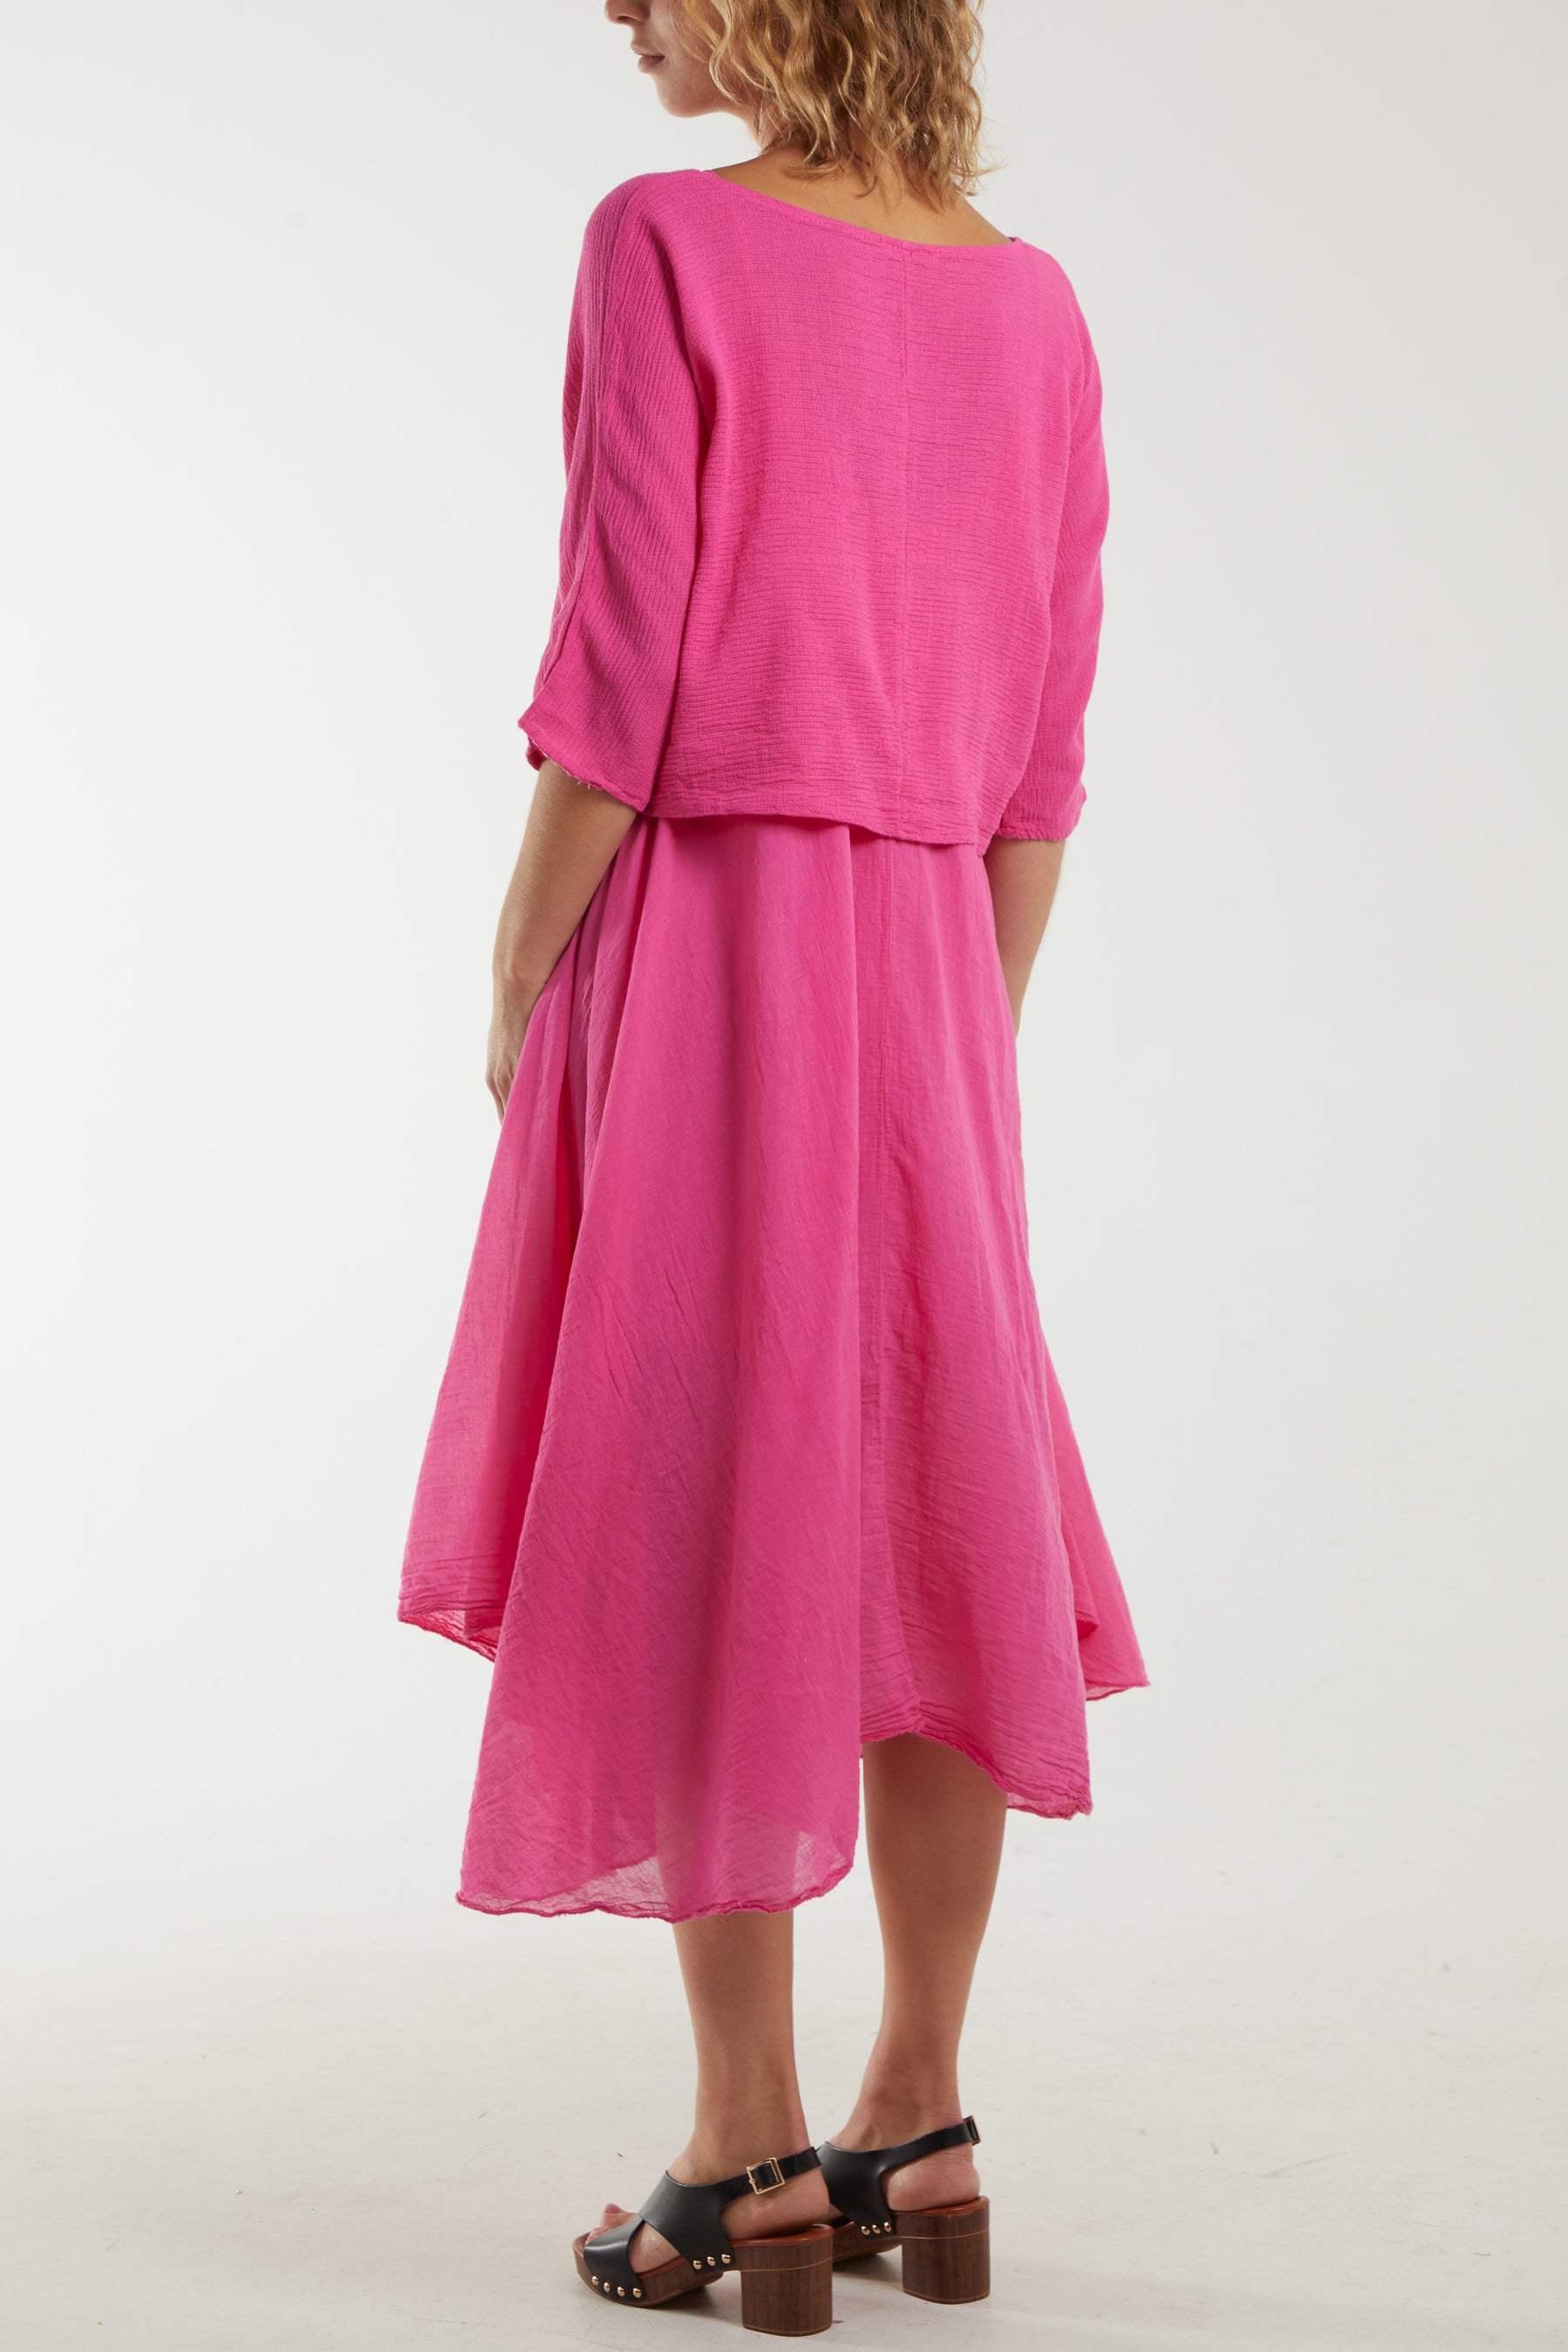 2 In 1 Crop Top & Cami Linen Dress